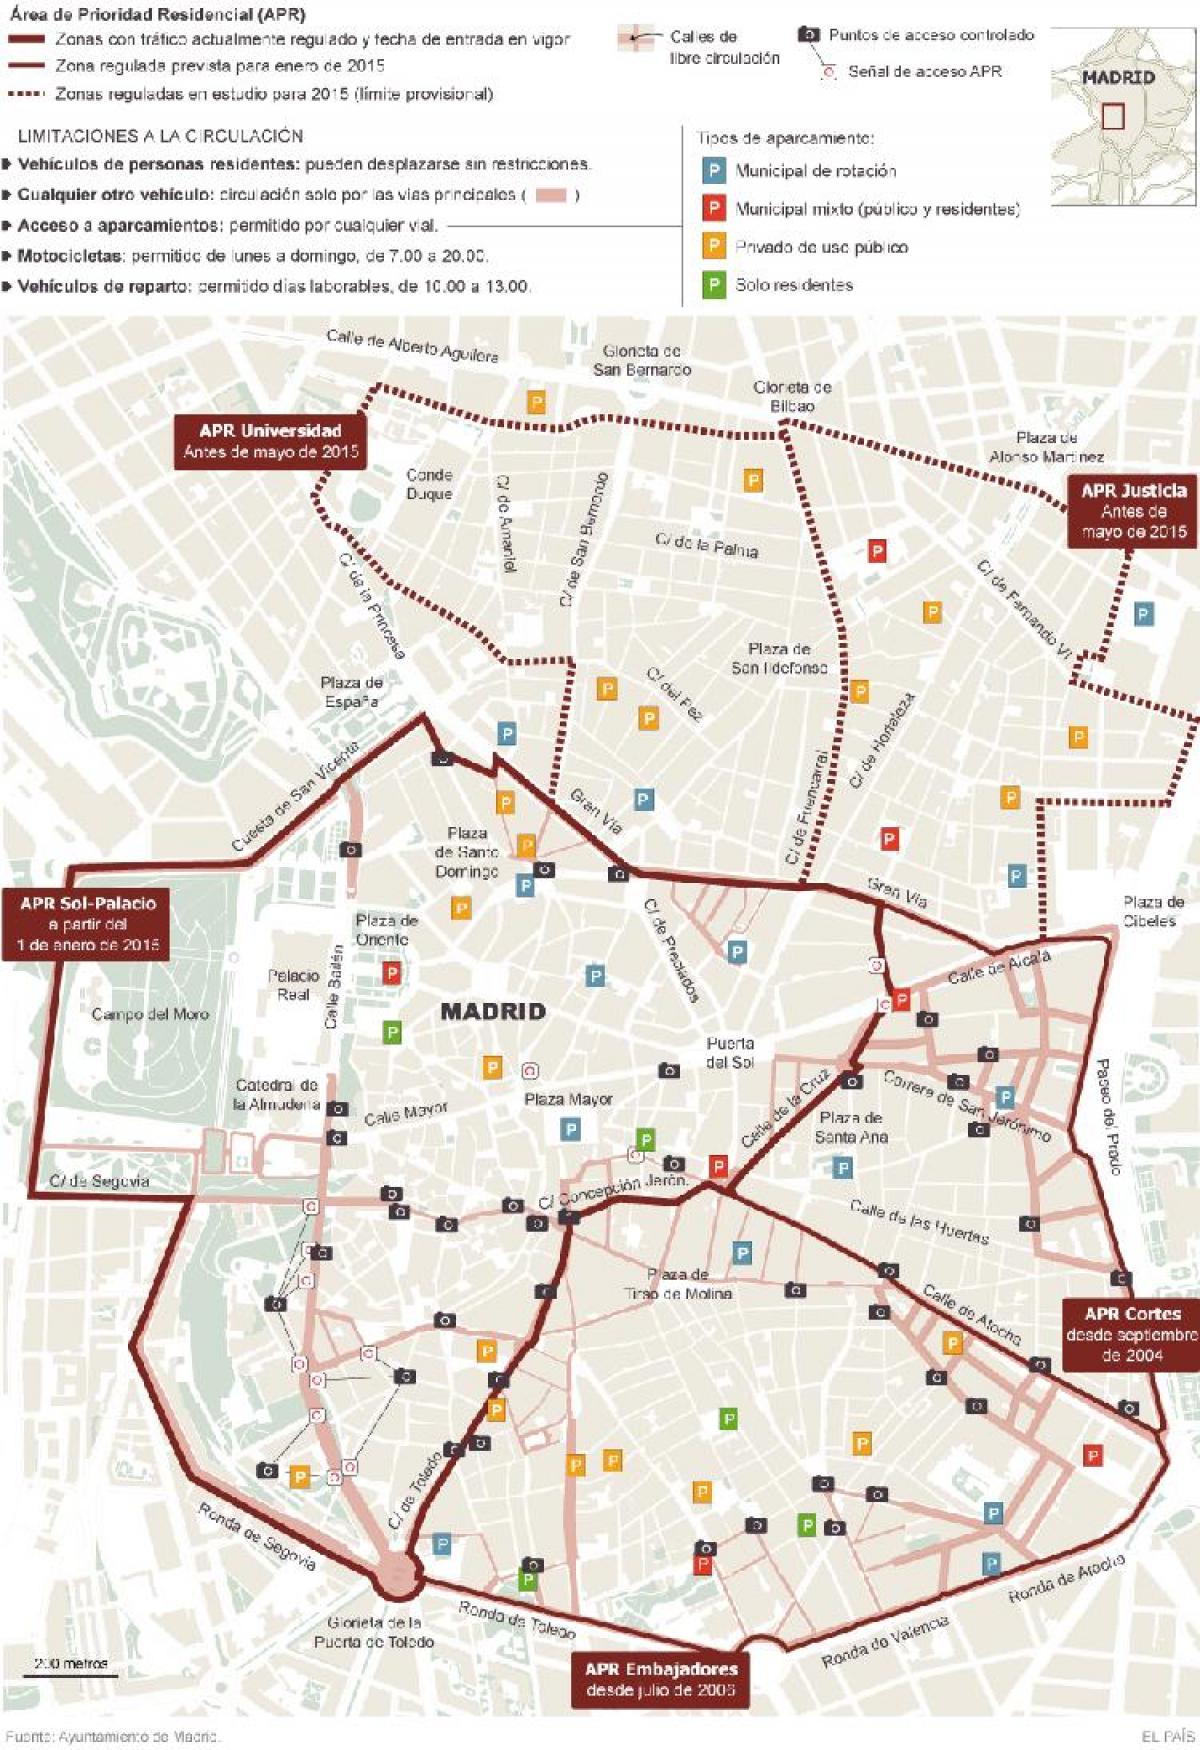 kort over Madrid parkering